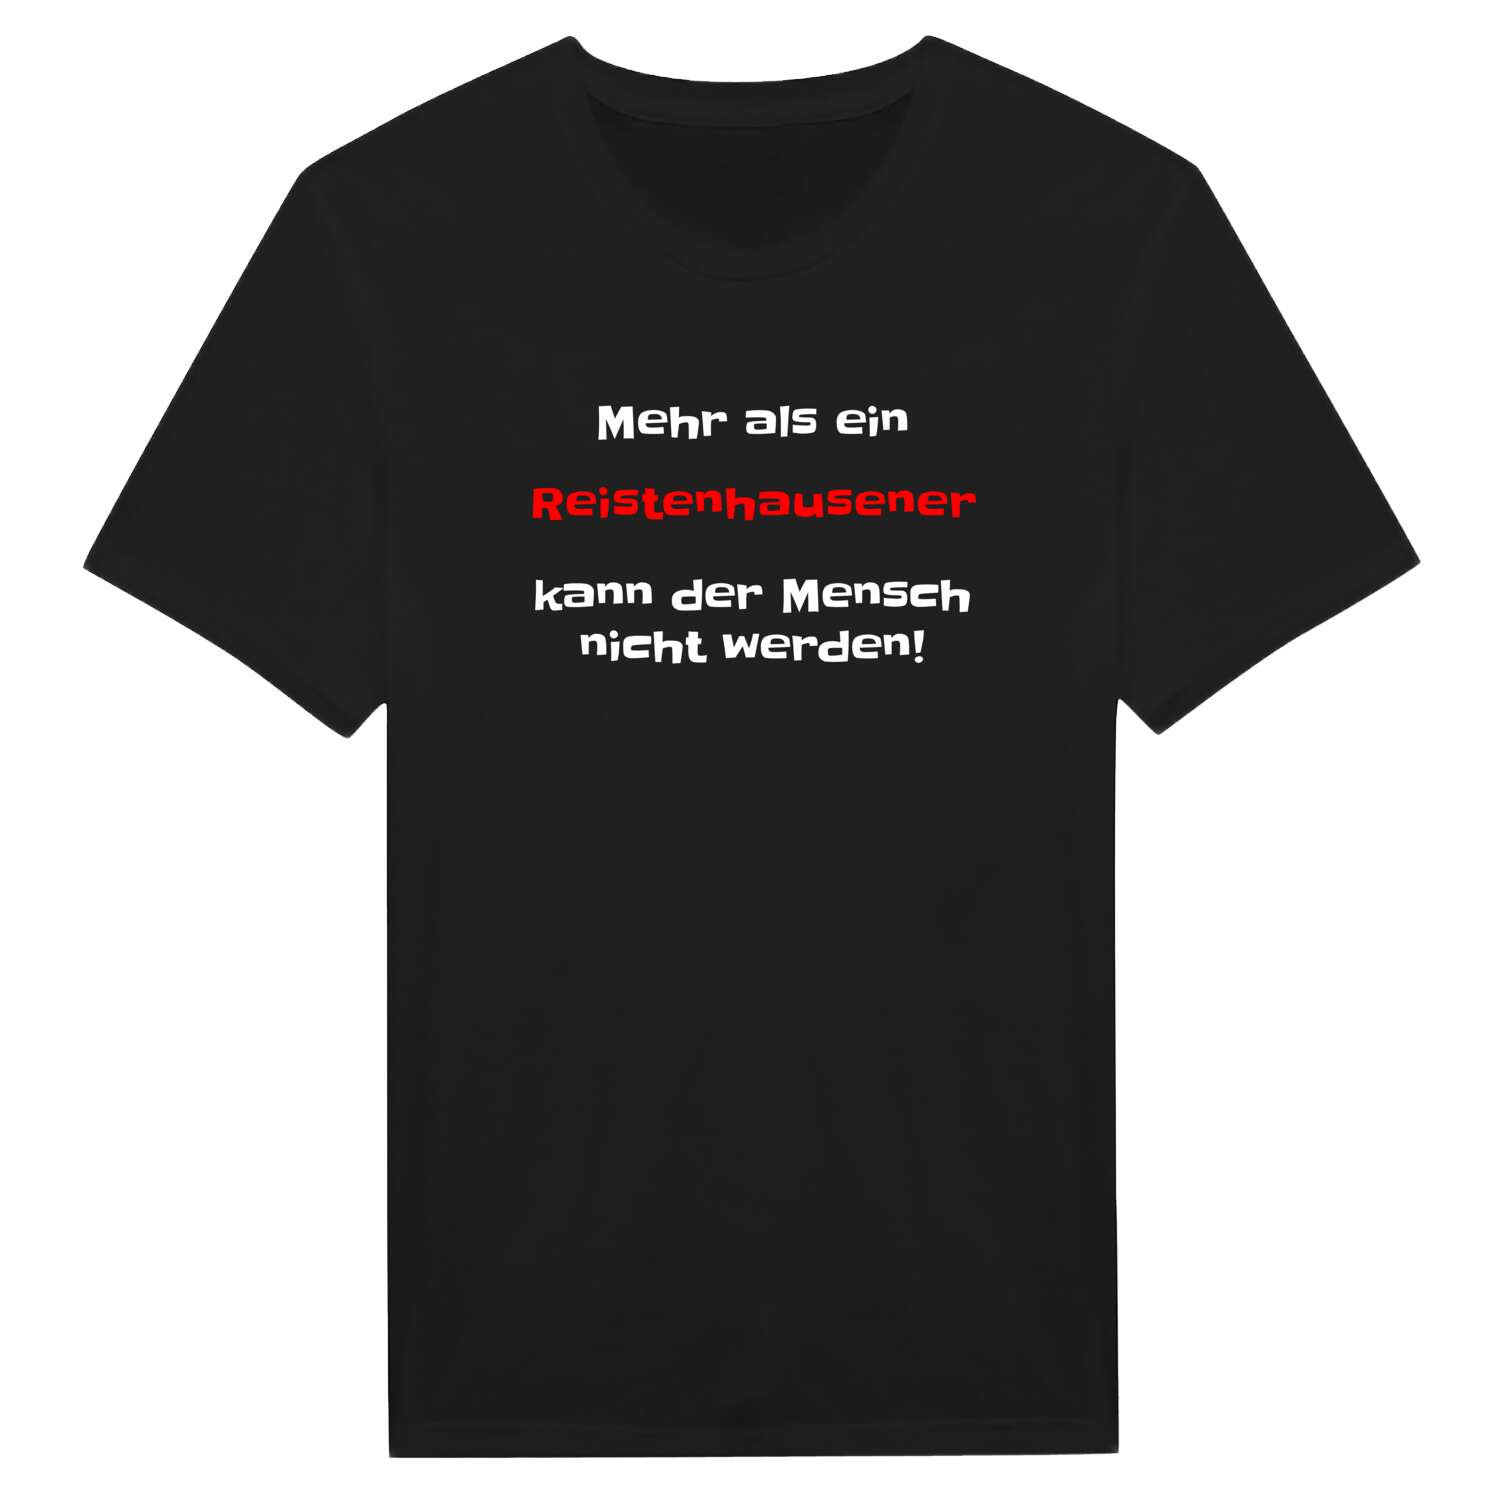 Reistenhausen T-Shirt »Mehr als ein«